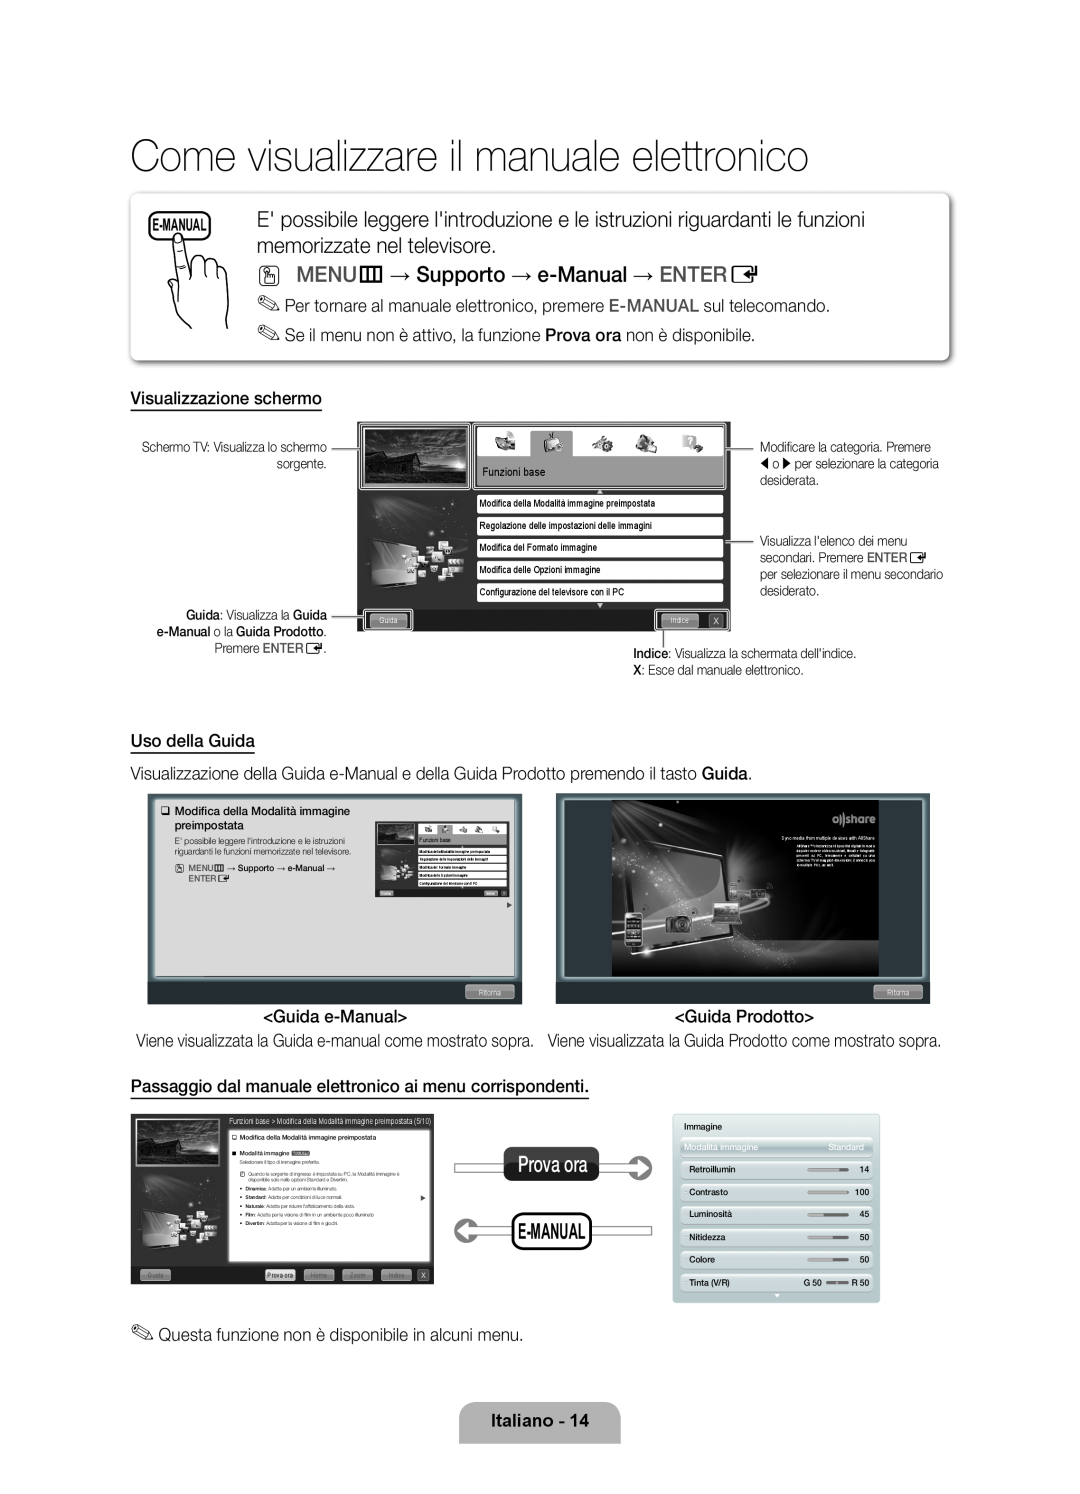 Samsung UE55D6000TPXZT Come visualizzare il manuale elettronico, memorizzate nel televisore, Prova ora, E-Manual, Italiano 